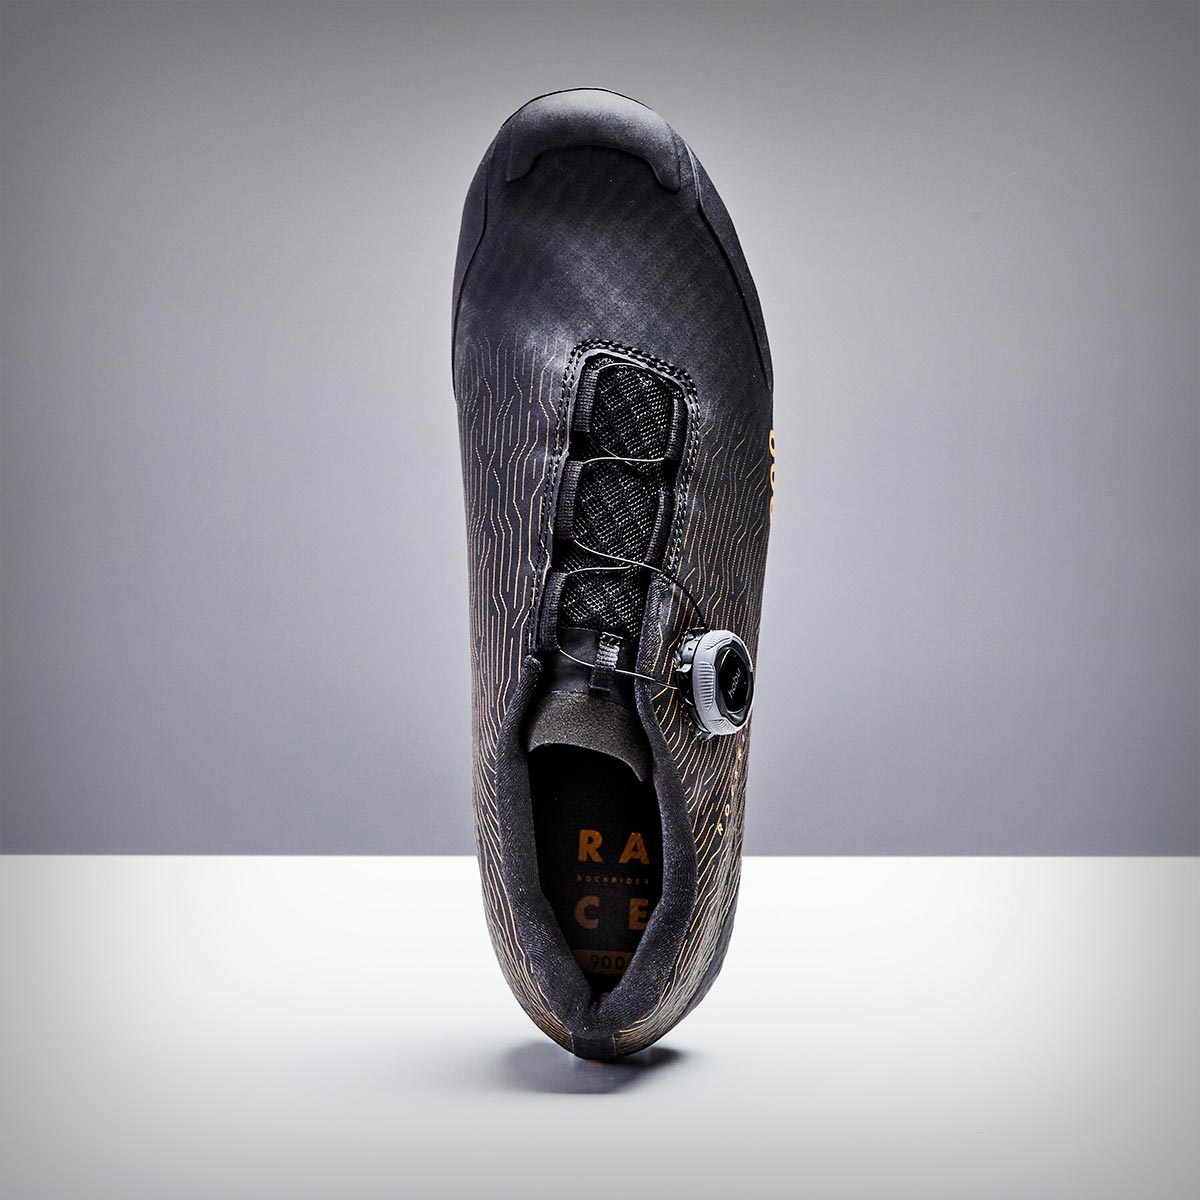 Rockrider Race 900 para XC y Gravel, unas llamativas zapatillas de precio ajustado y características tope de gama